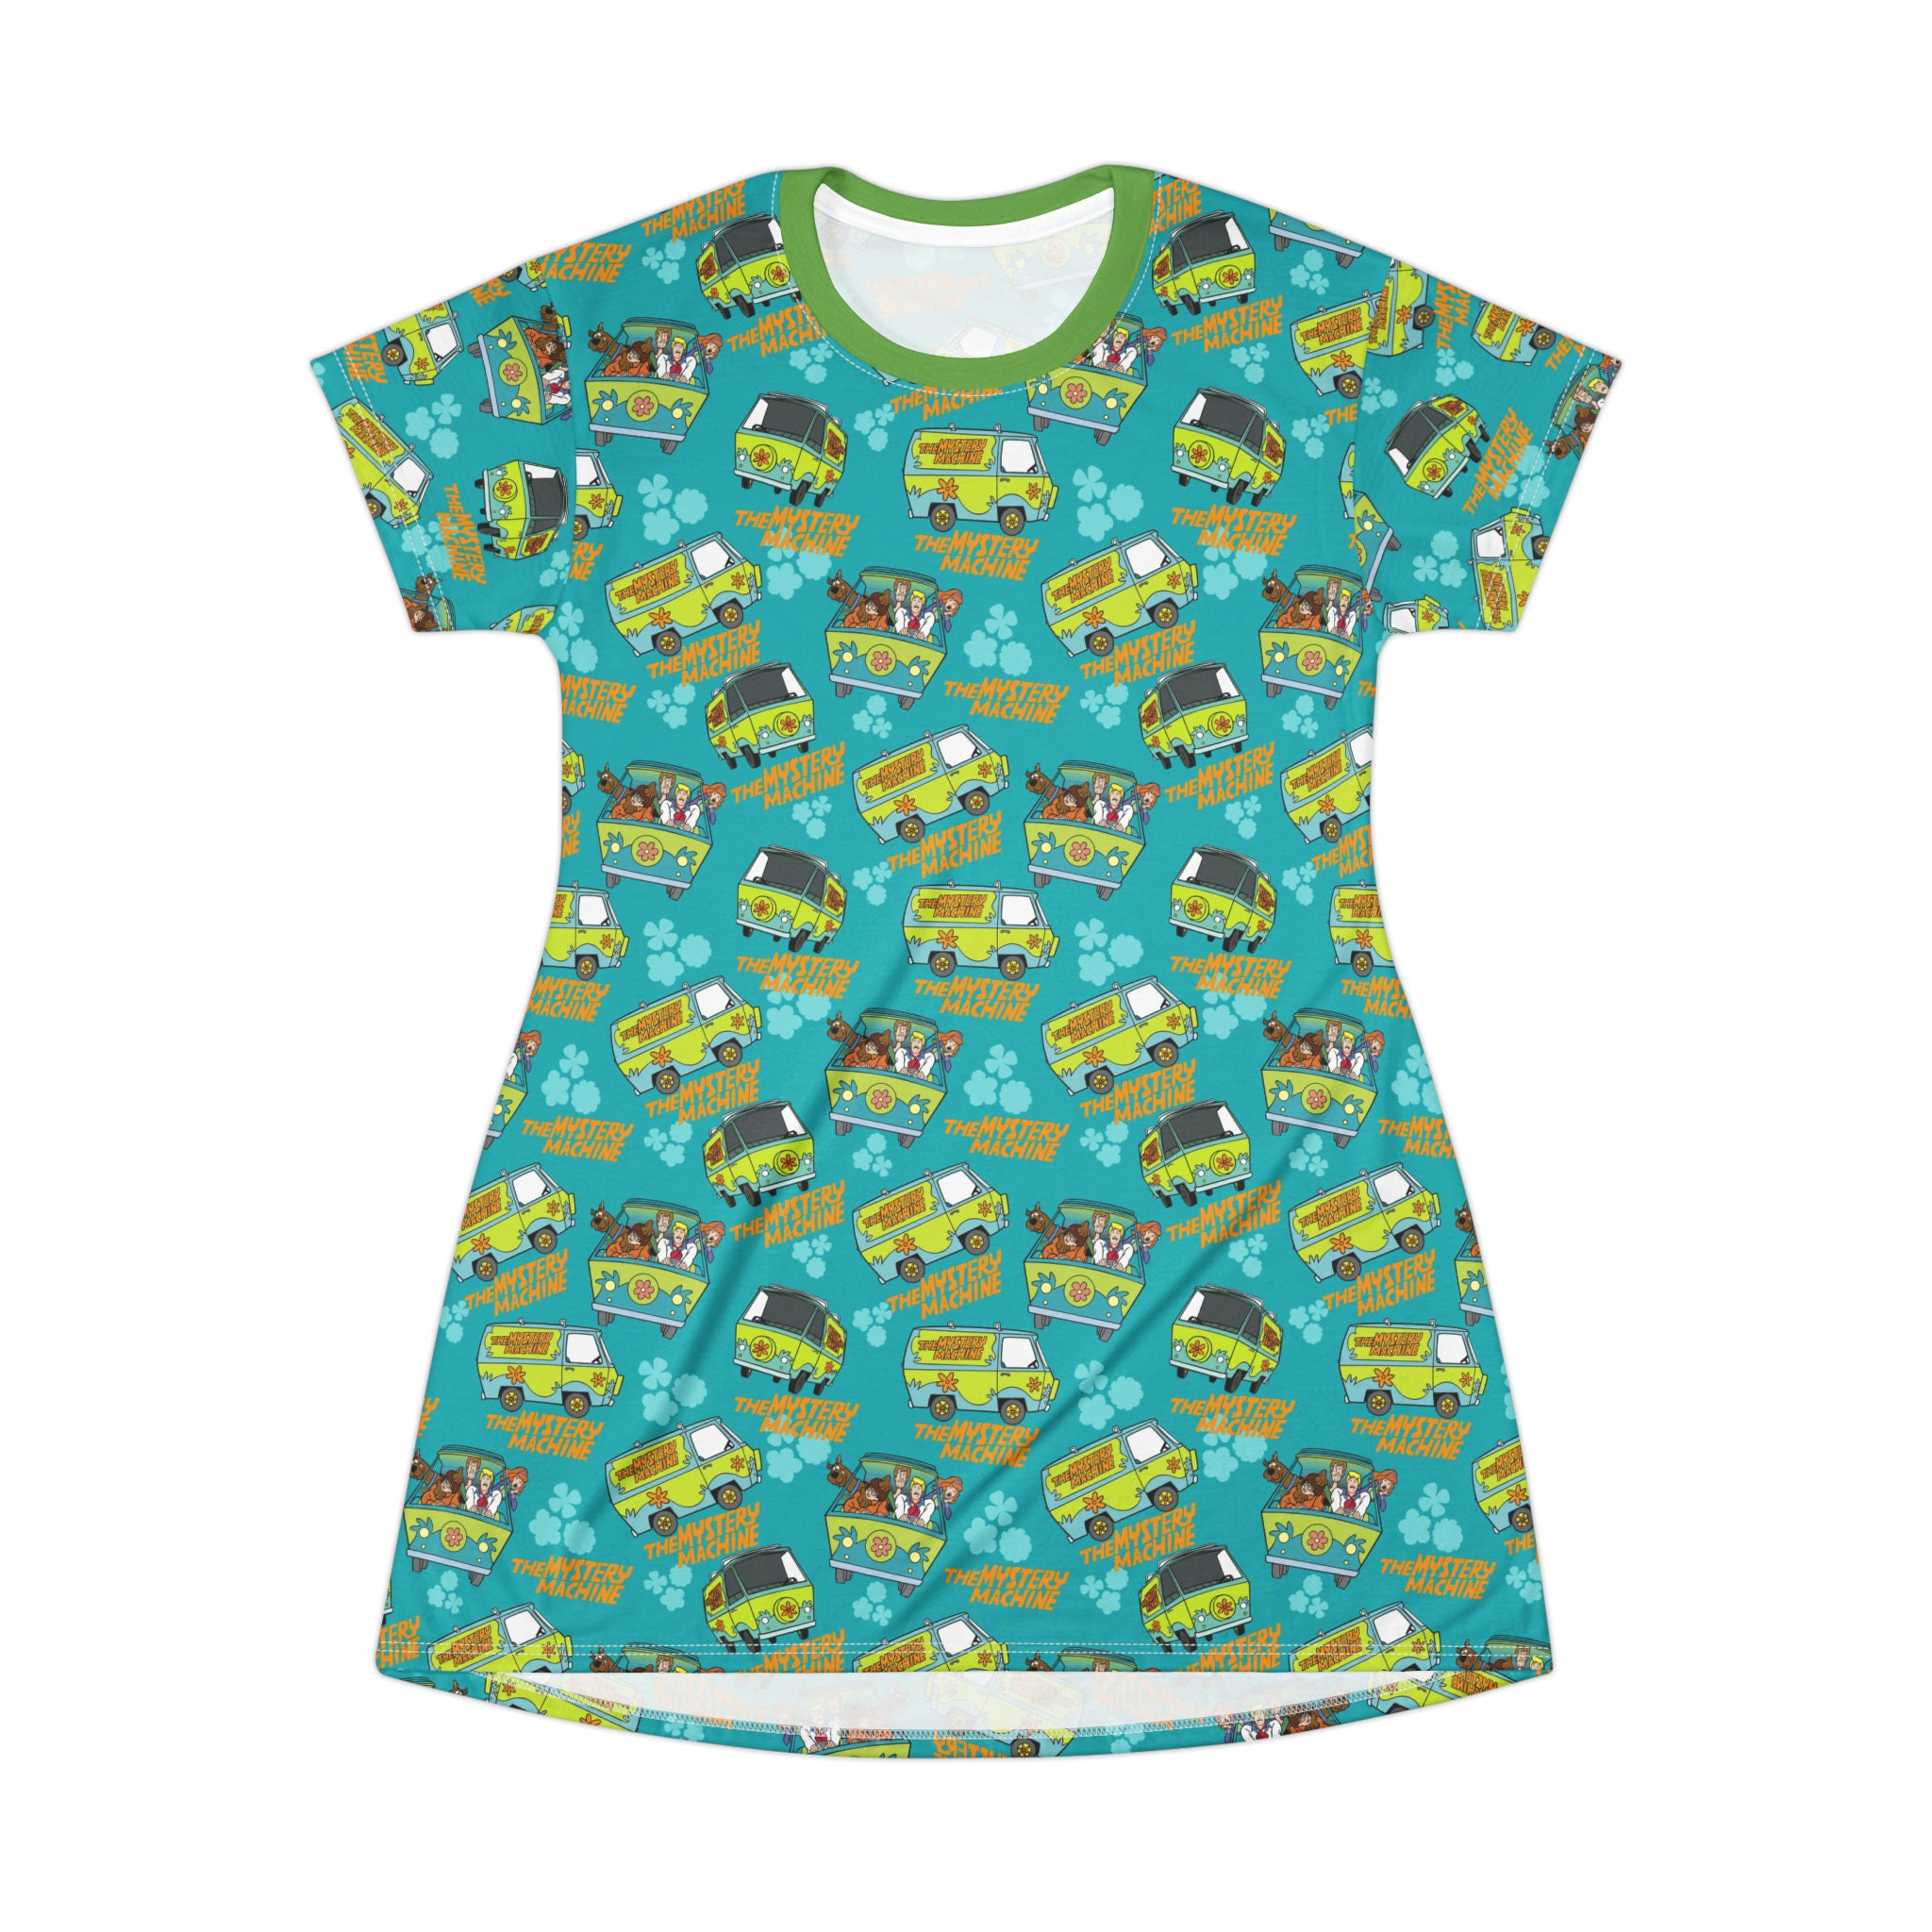 Scooby Doo T-Shirt Dress, Cartoon Women's T-Shirt Dress